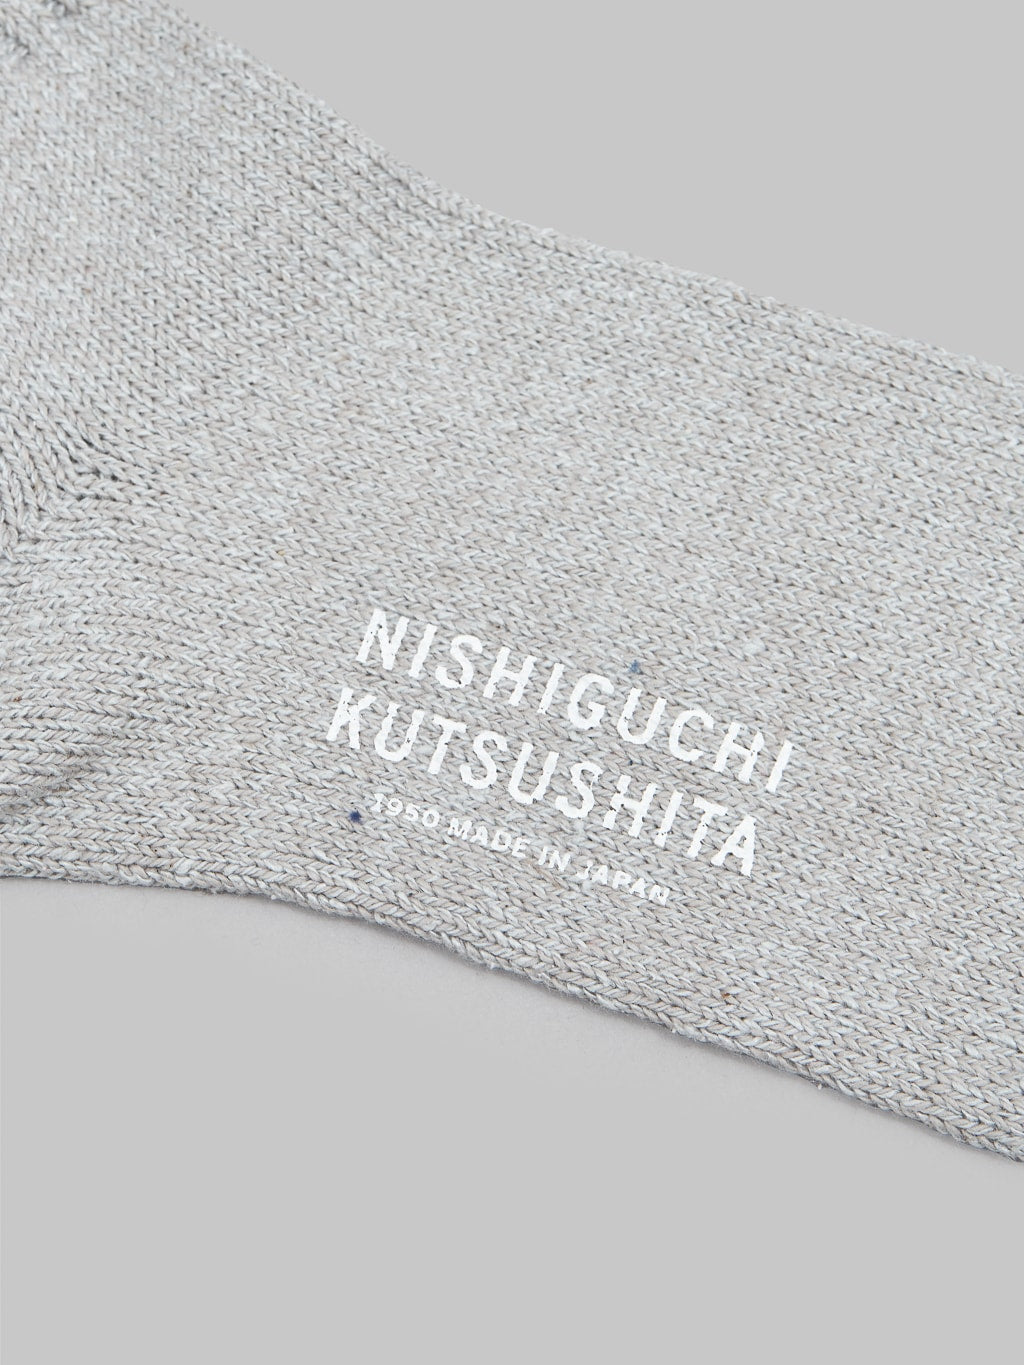 Nishiguchi Kutsushita Silk Cotton Socks Light Grey Brand Logo